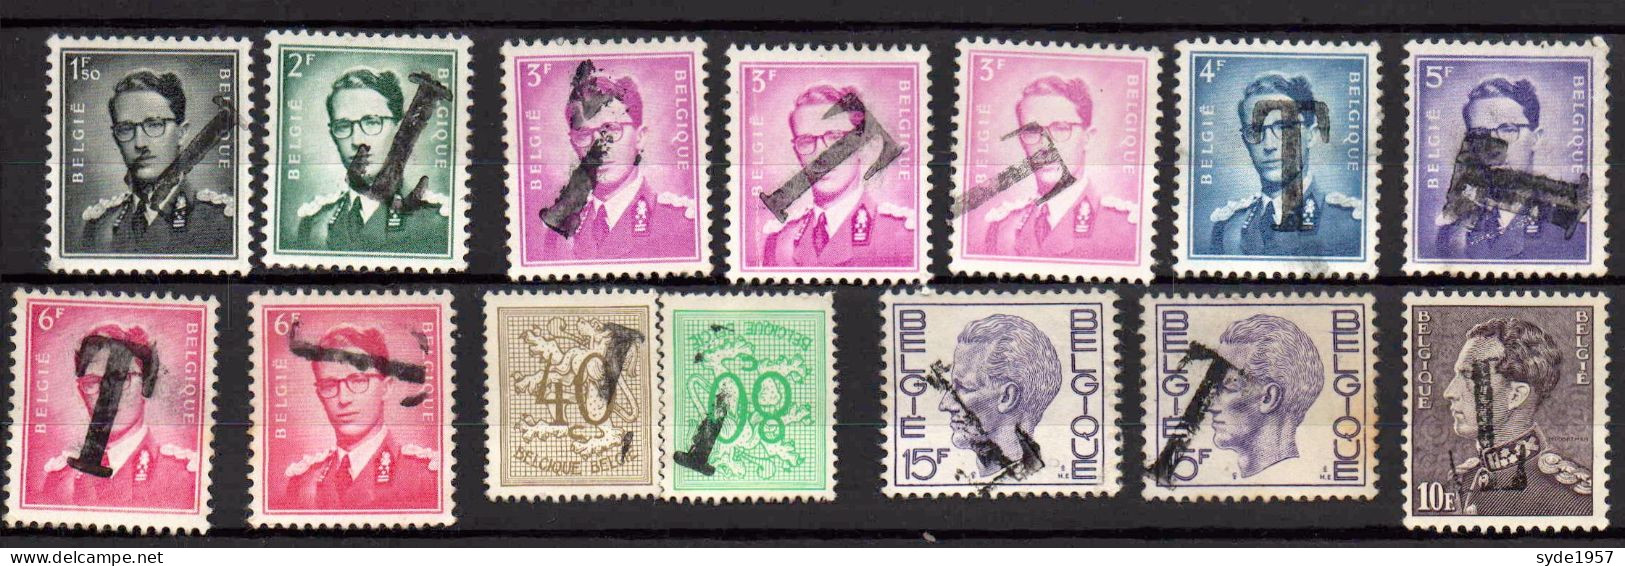 Belgique - Timbres Taxe 1966 : 14 Timbres Avec Surcharge T (Baudouin, Lion Héraldique Et Leopold 3) - Briefmarken